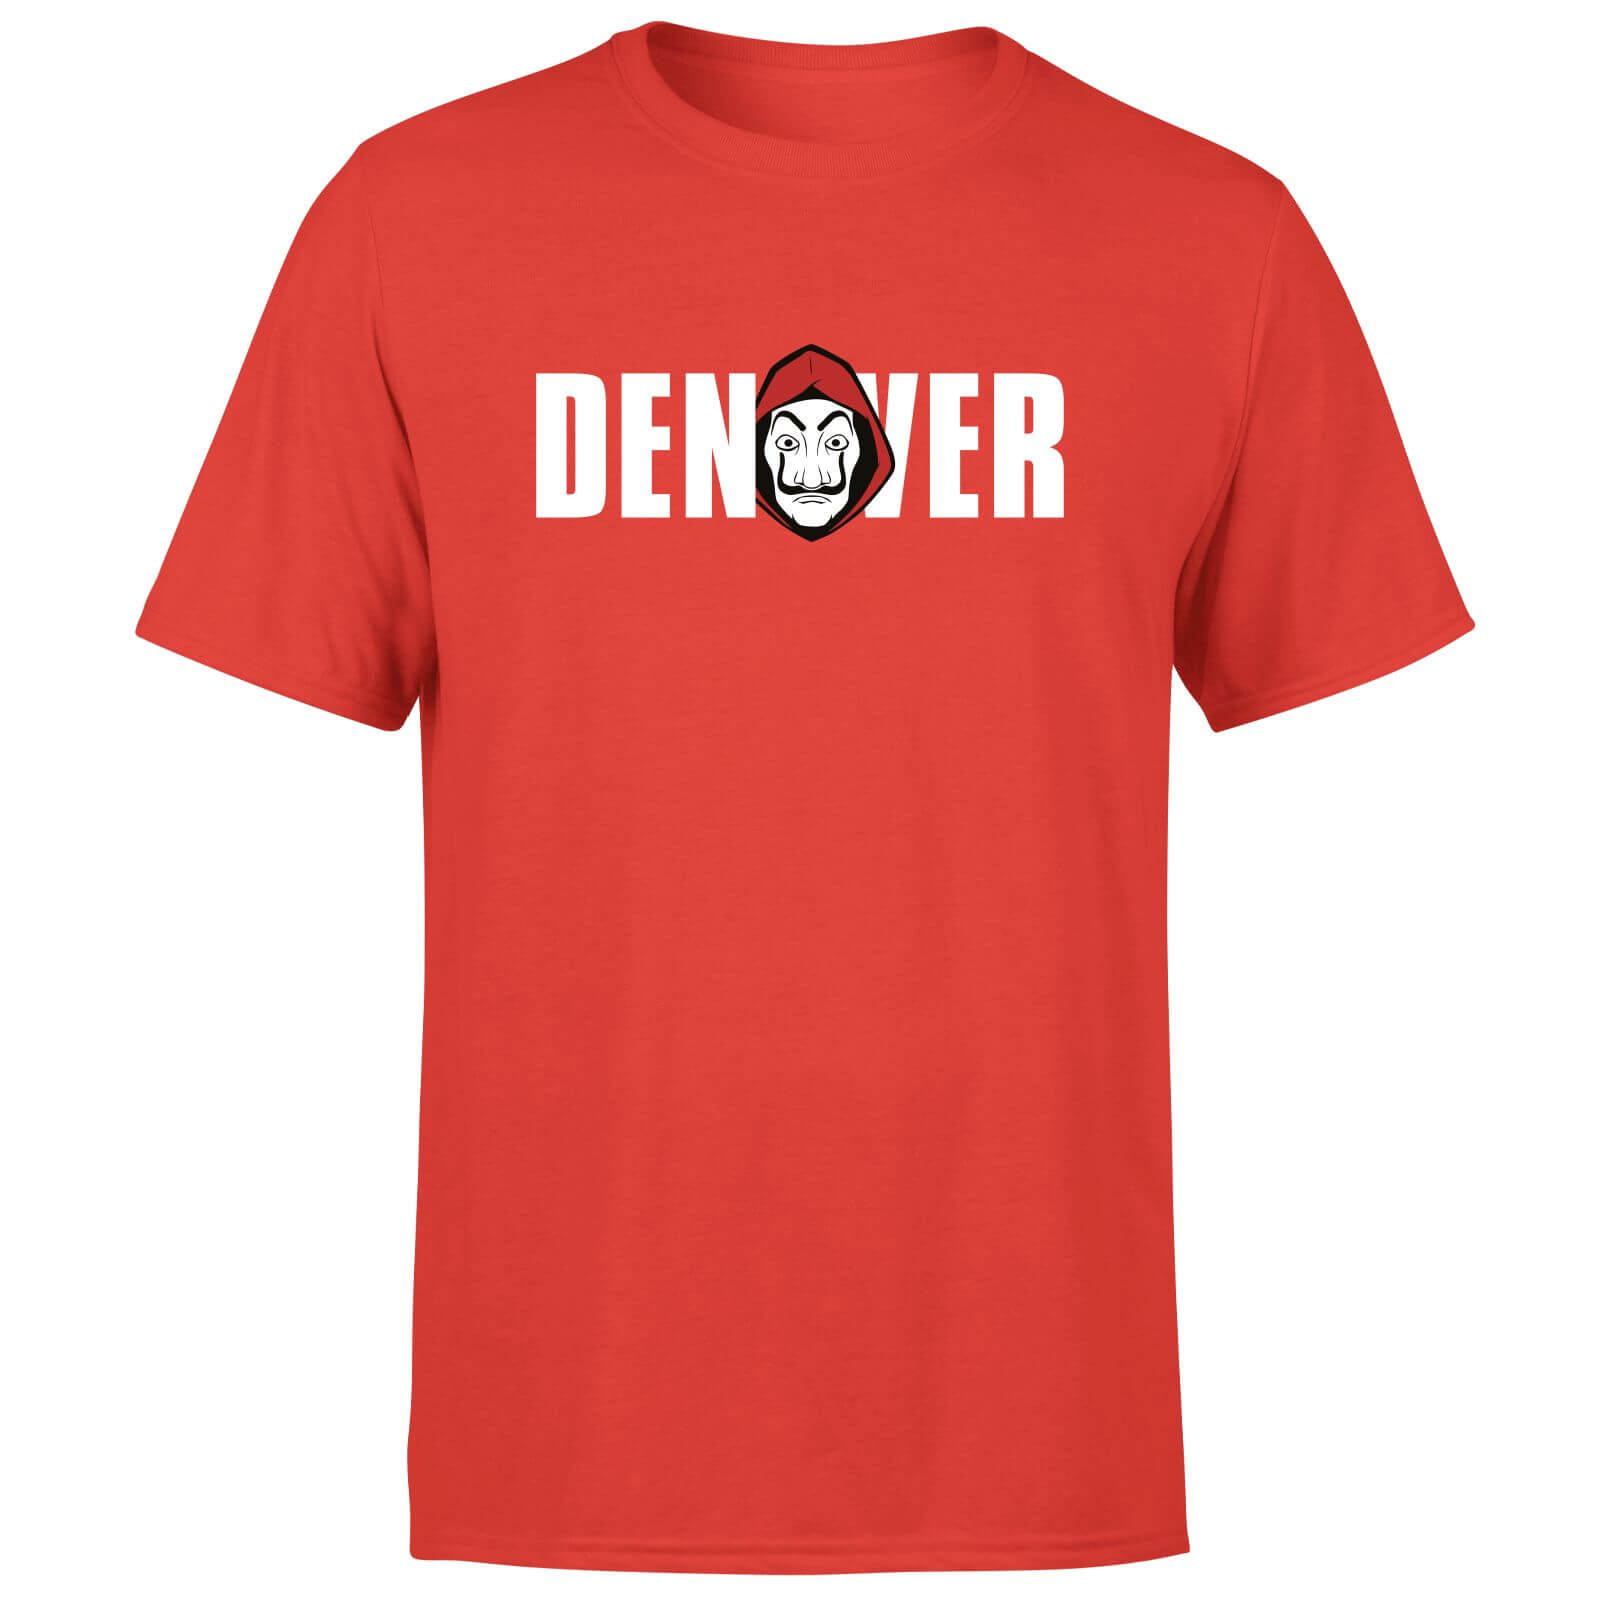 Money Heist Denver Men's T-Shirt - Rood - S - Rood